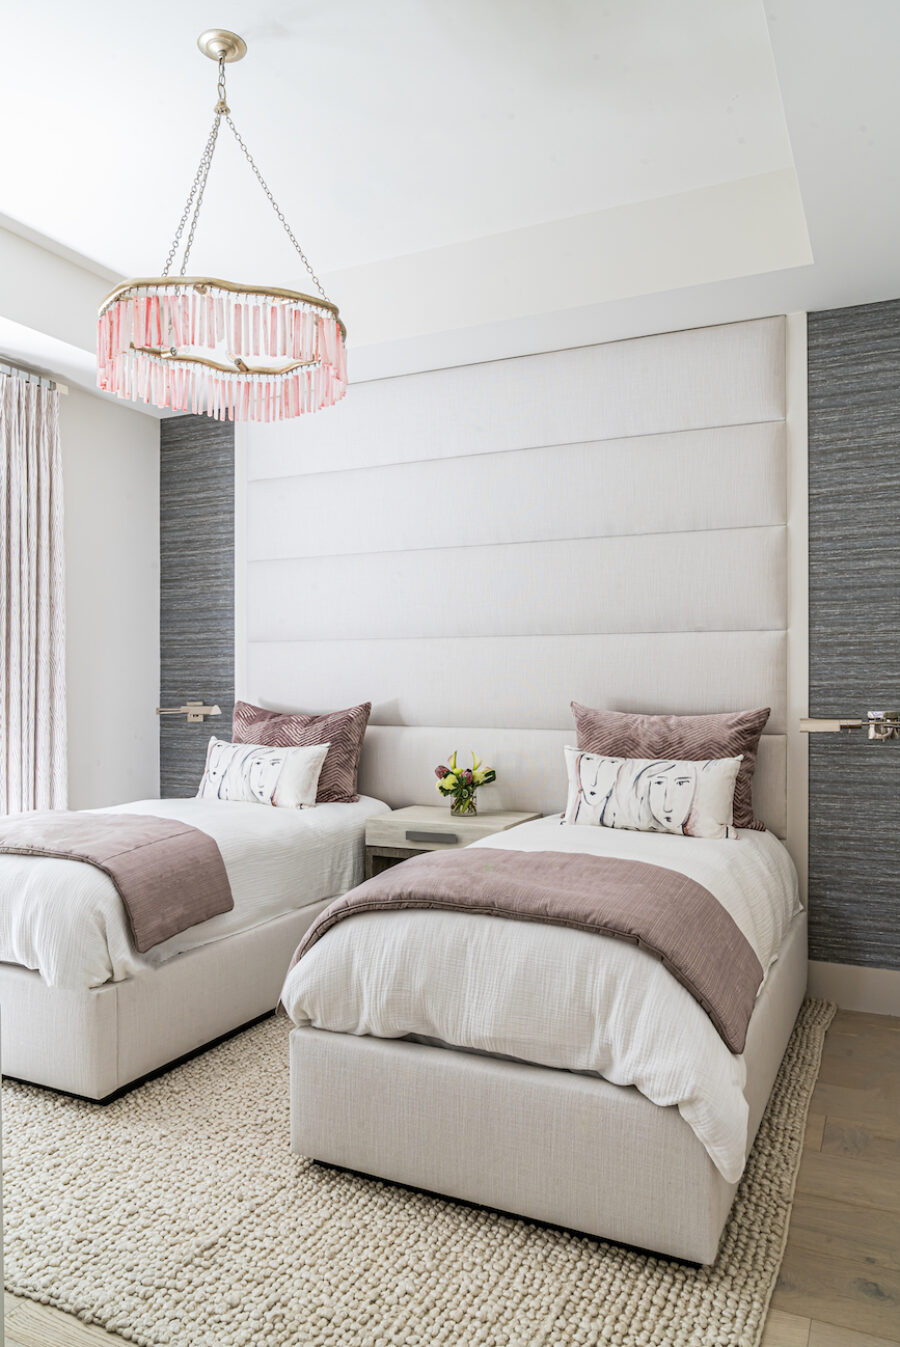 twin-beds-guest-bedroom-design-bonita-bay-fl